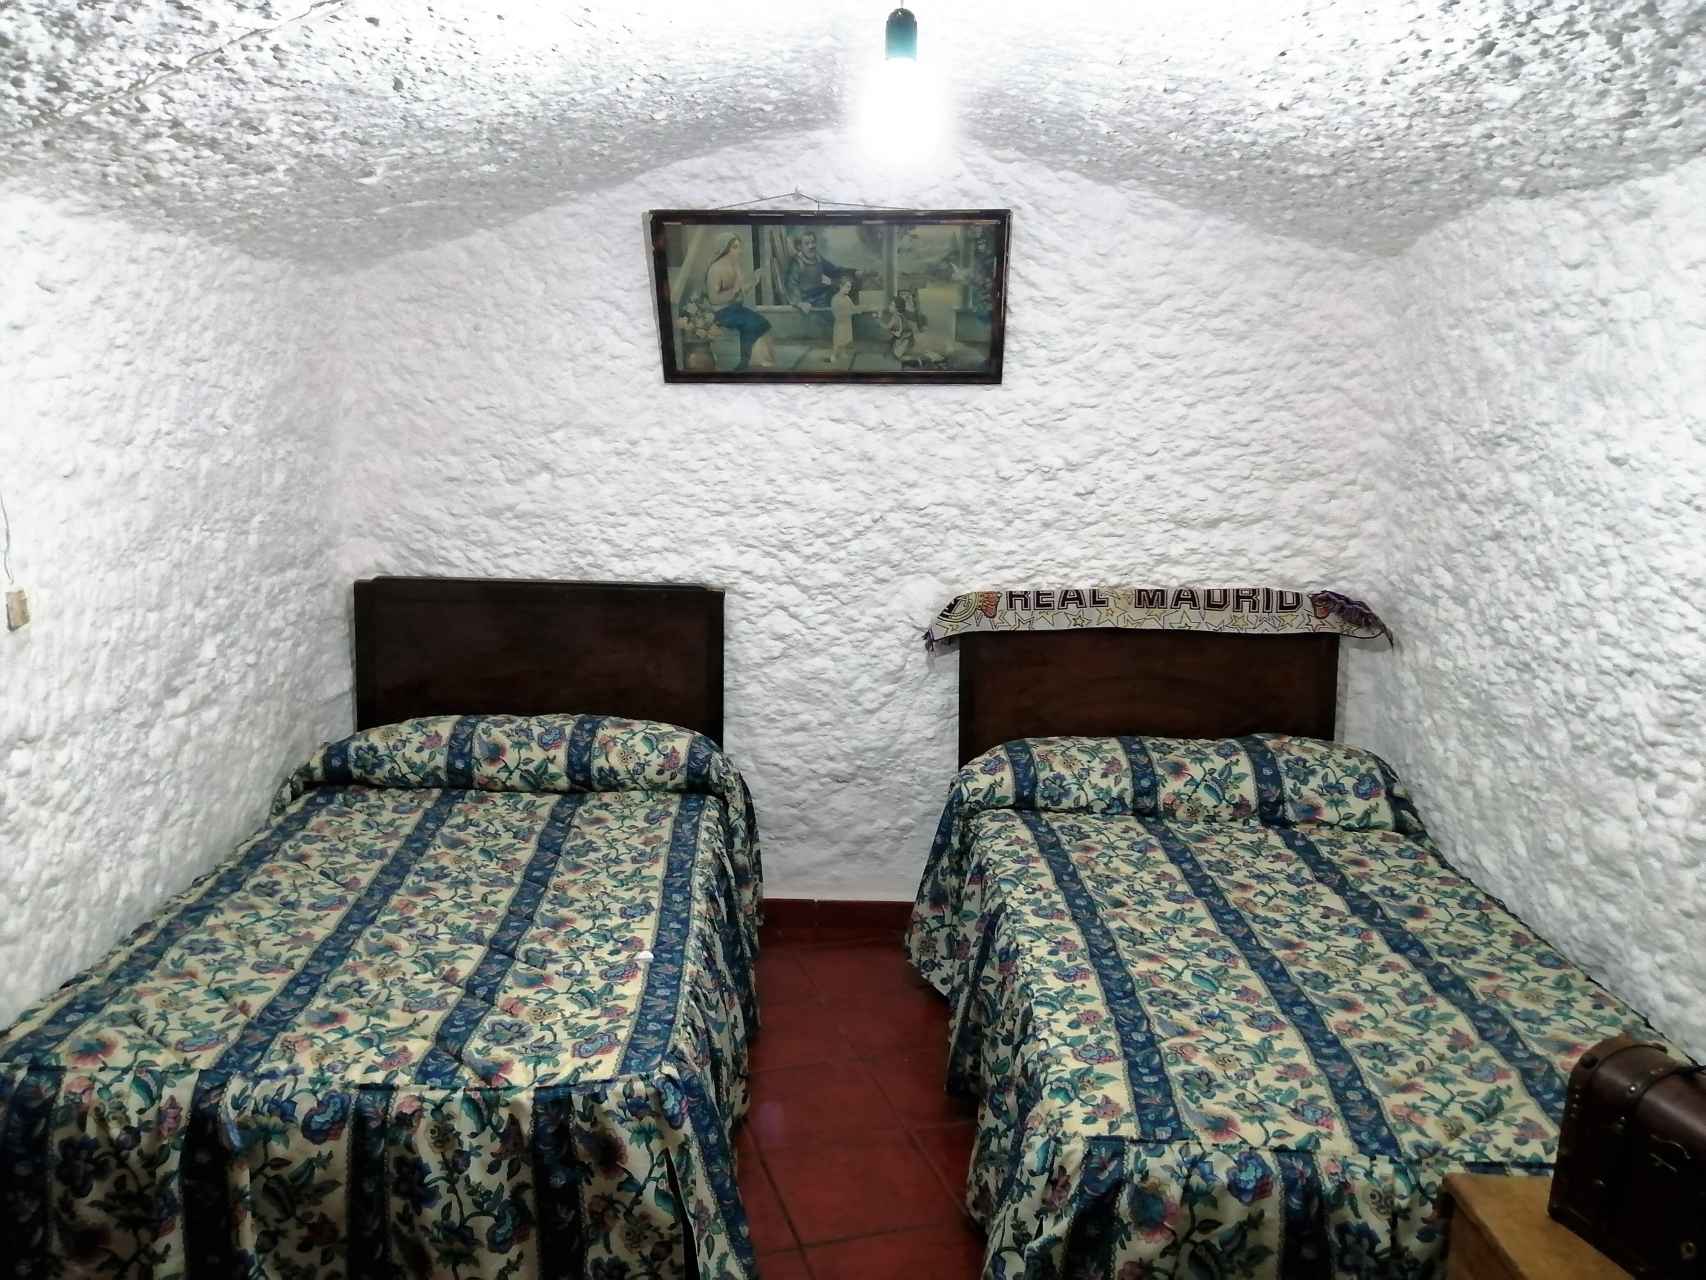 La habitación al fondo de la cueva donde Manuel y Ramón dormían de niños. Entonces no había electricidad.